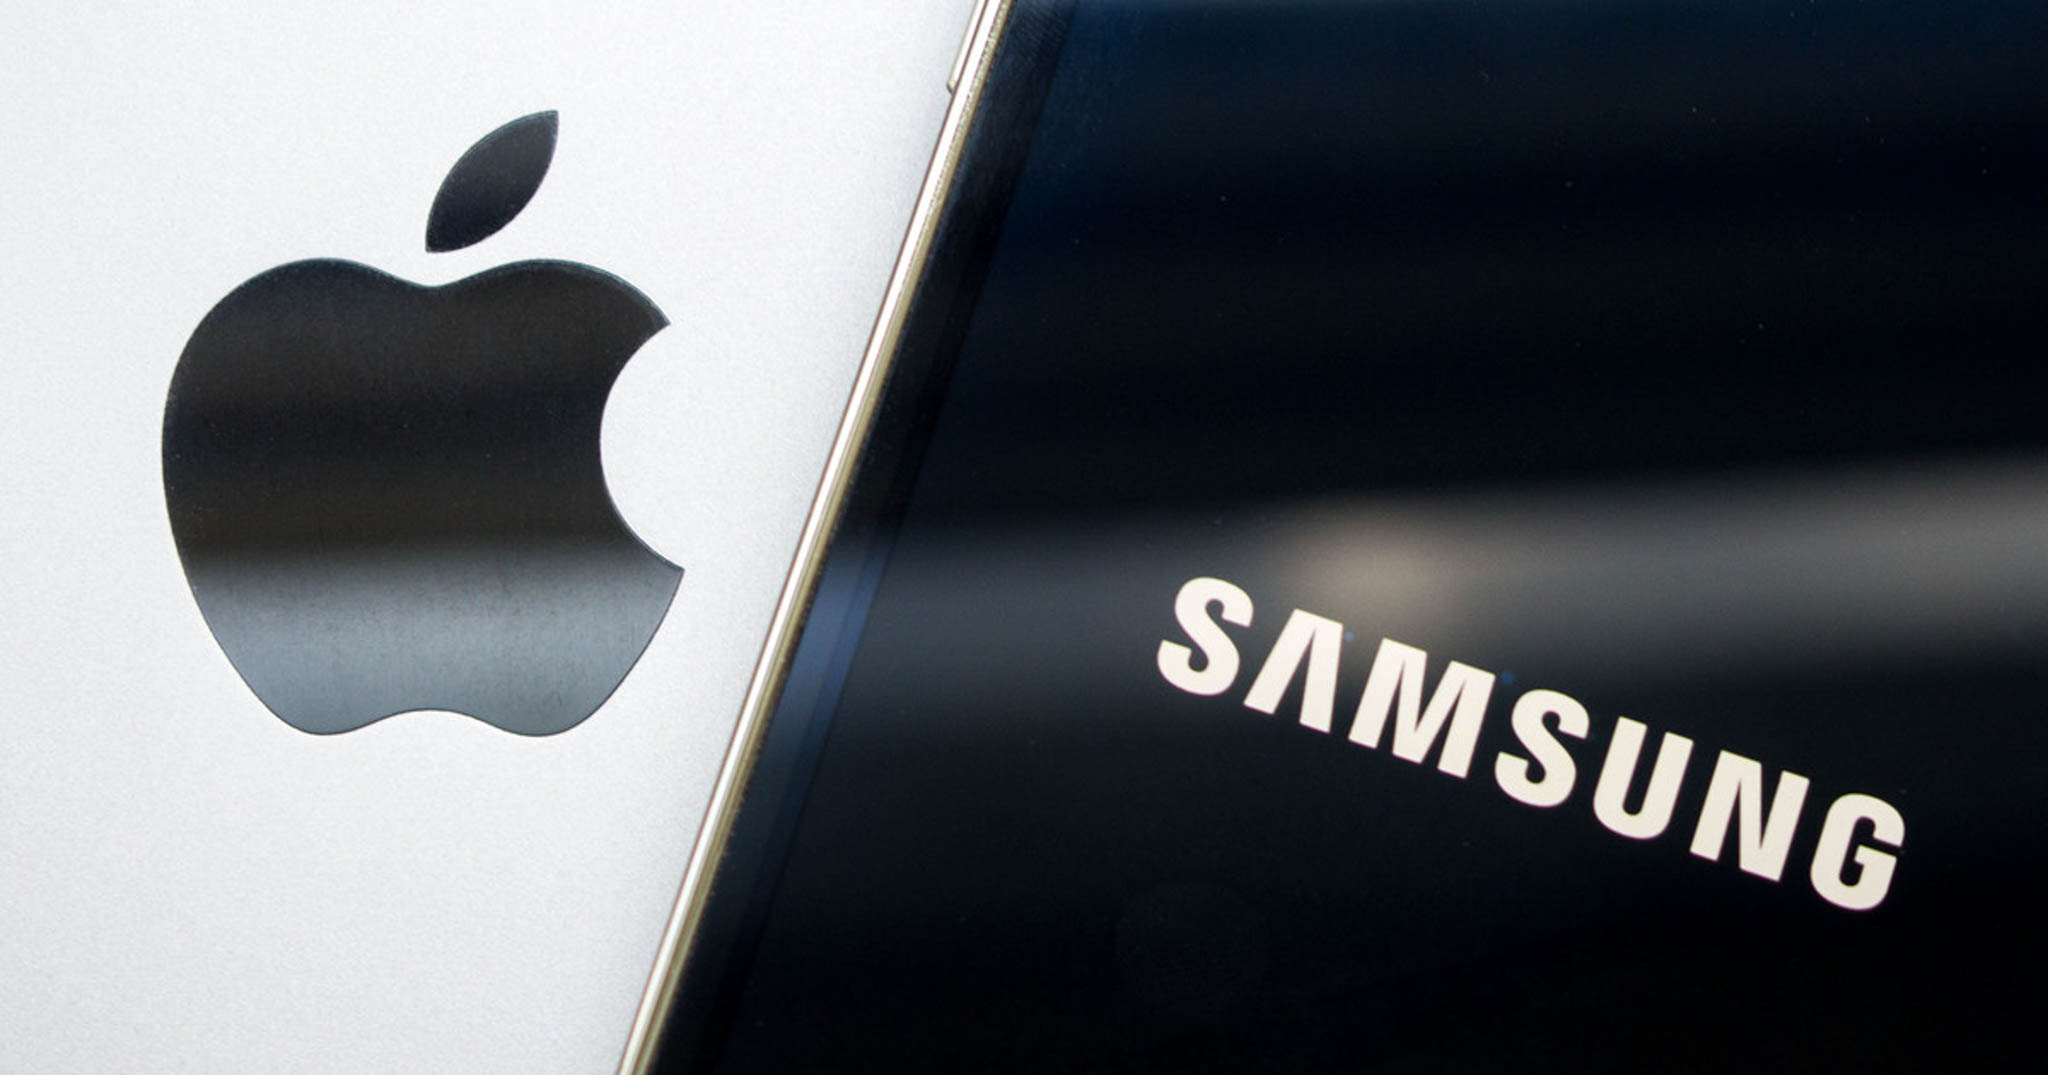 Apple đứng sau Samsung về chi tiêu cho chíp bán dẫn năm 2017